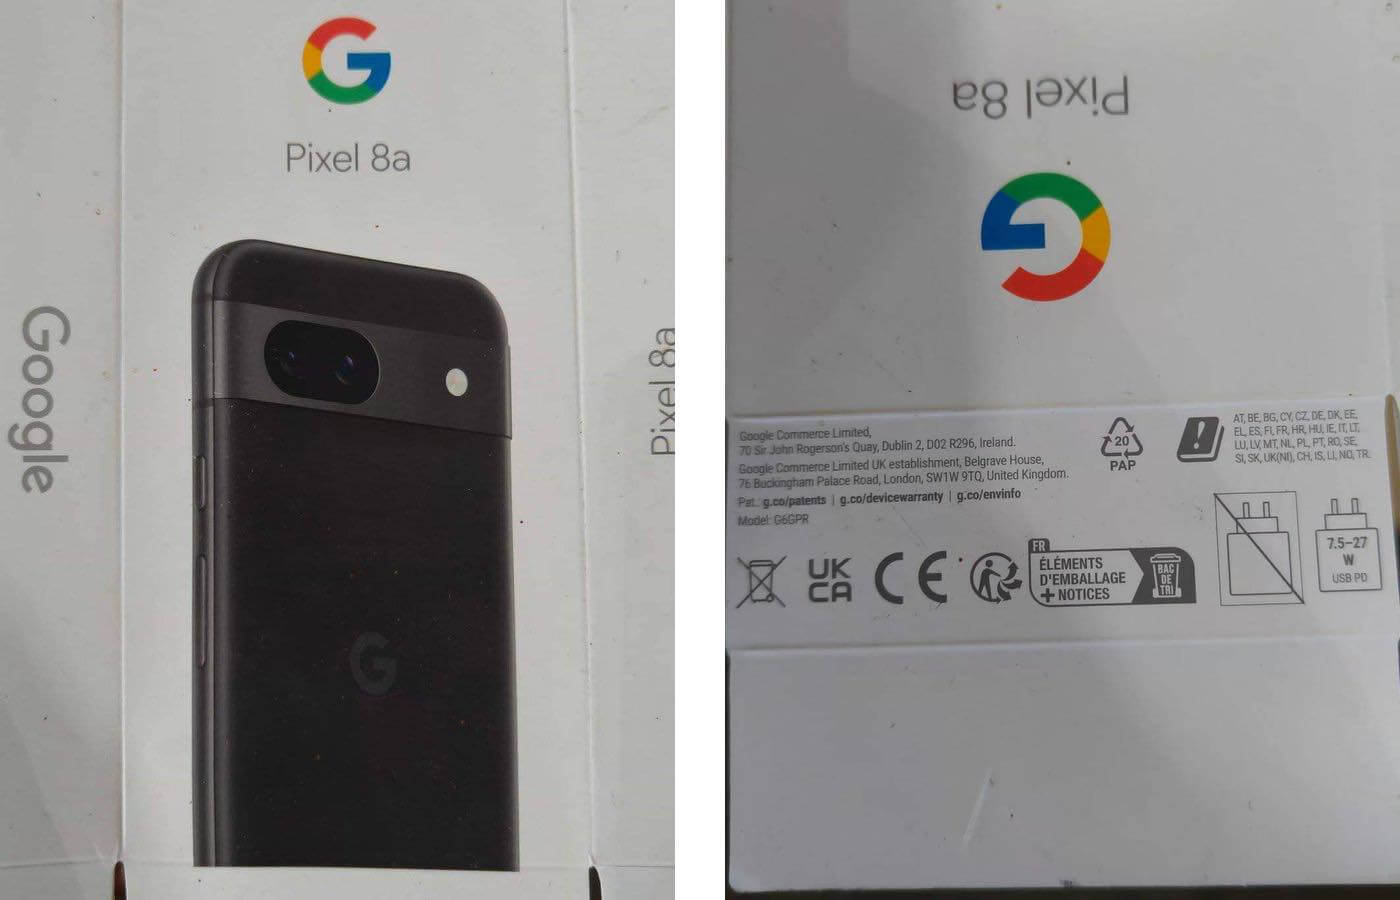 ｢Google Pixel 8a｣のパッケージの写真が流出 ｰ 製品名やデザインが明らかに